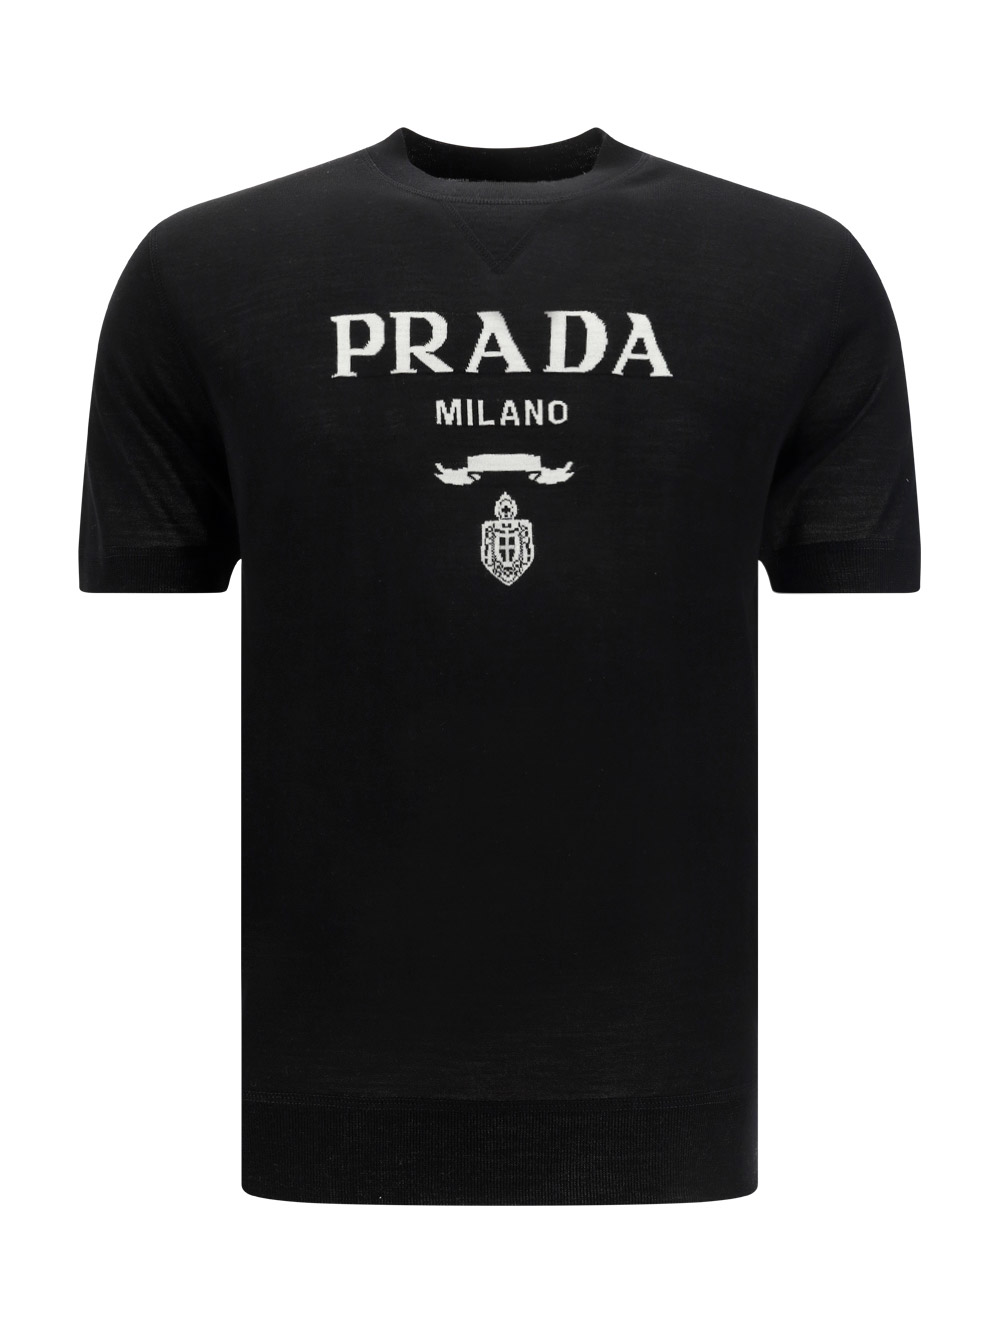 PRADA Clothing for Men | ModeSens